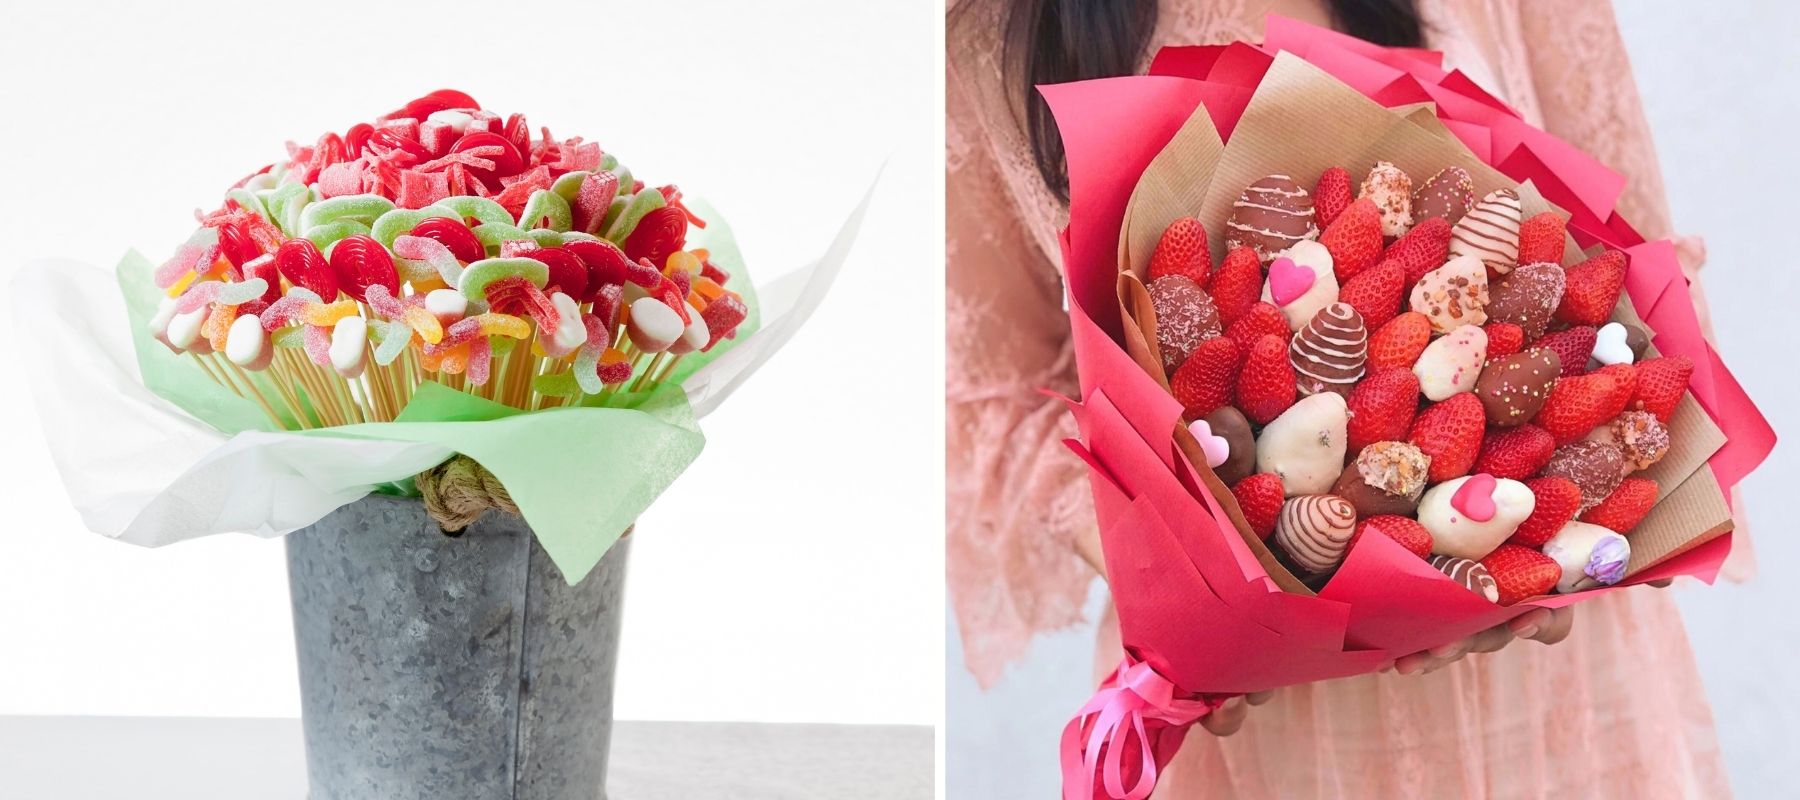 Bouquet de fleuriste en bonbons - Caramelys Lyon